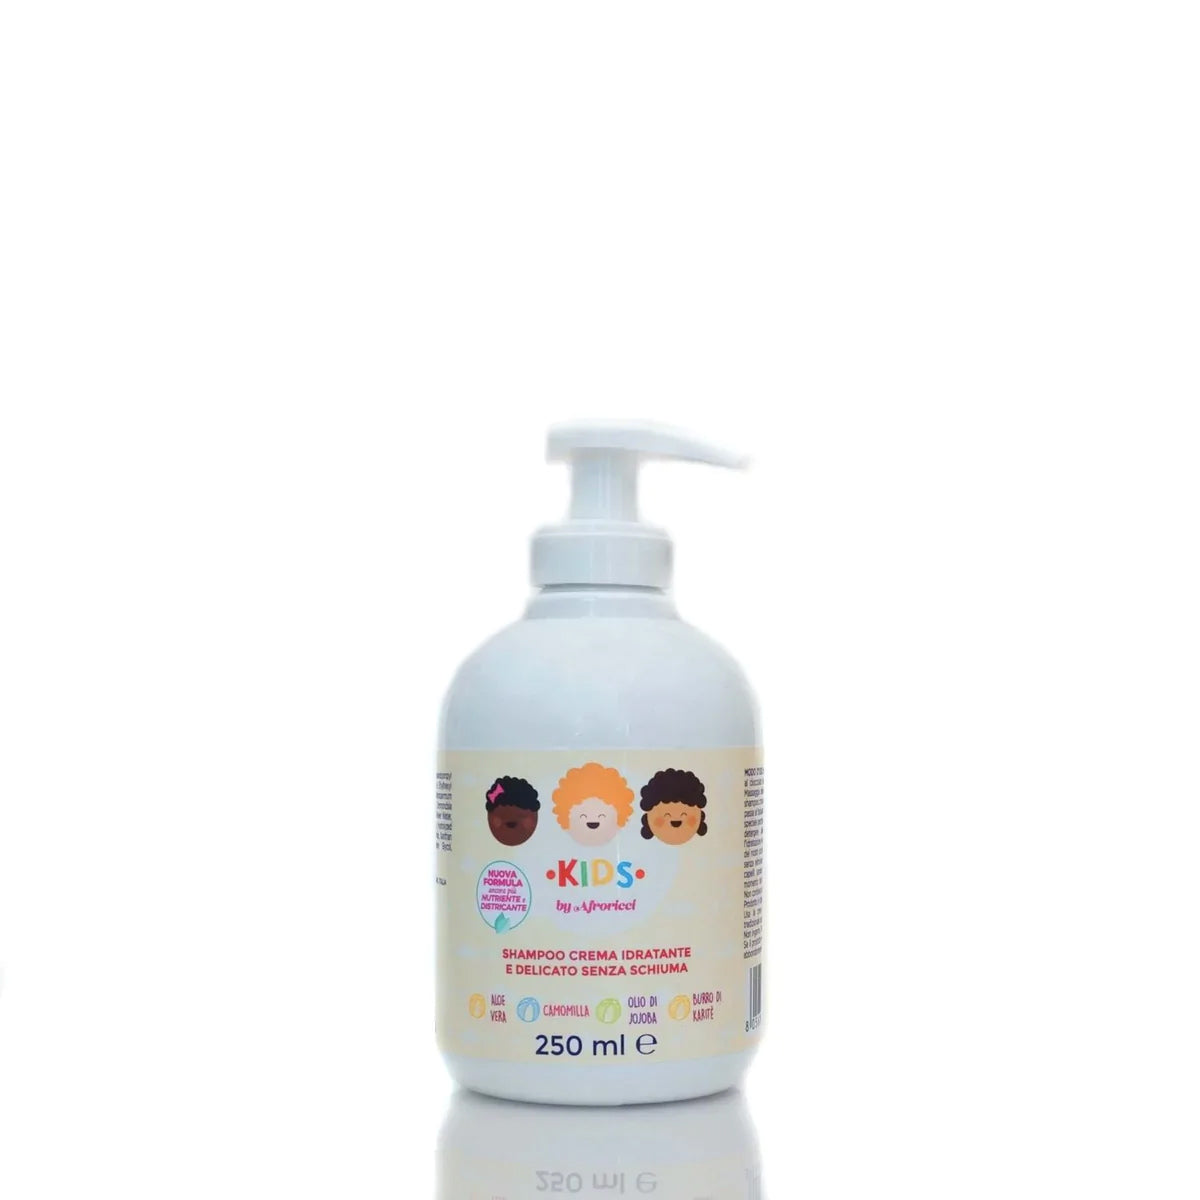 AfroRicci Kids Shampoo Crema Idratante E Delicato Senza Schiuma 250ml